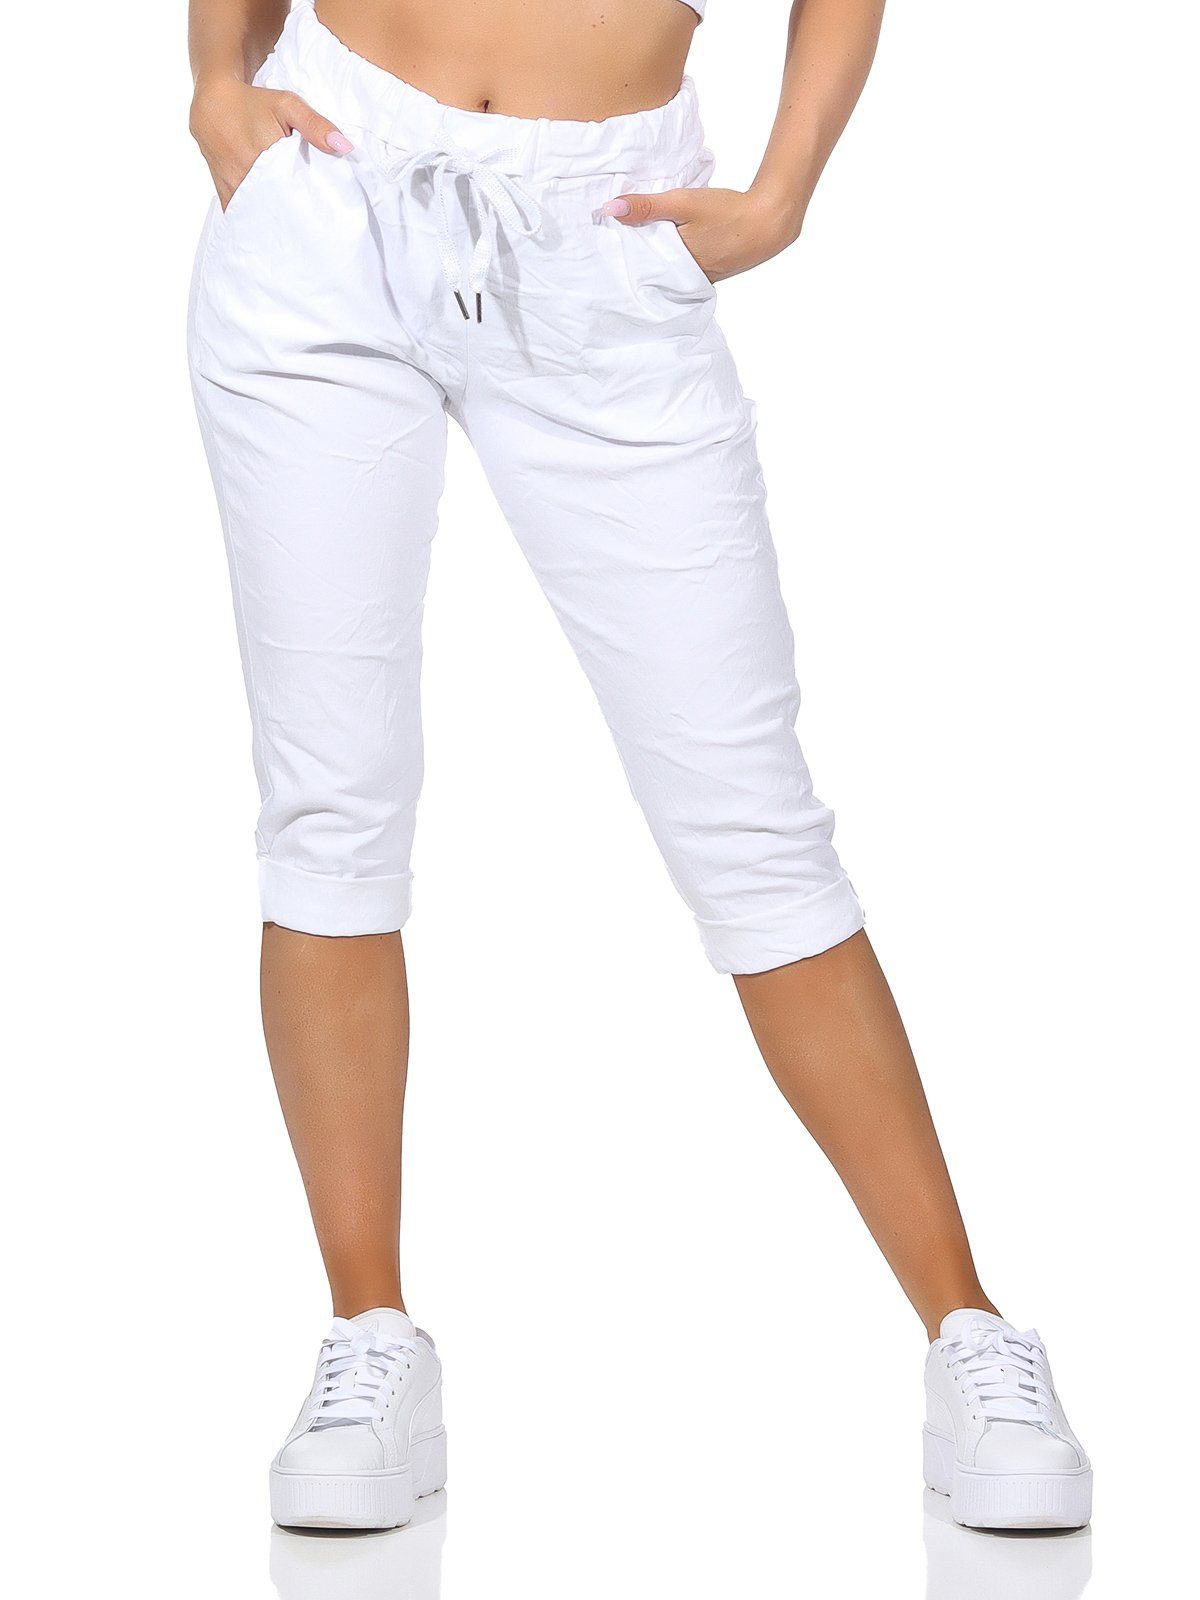 Aurela Damenmode Kordelzug, sommerlichen Hose Capri Taschen Bermuda Sommerhose Damen Farben, Weiß in Kurze 36-44 Jeans 7/8-Hose und